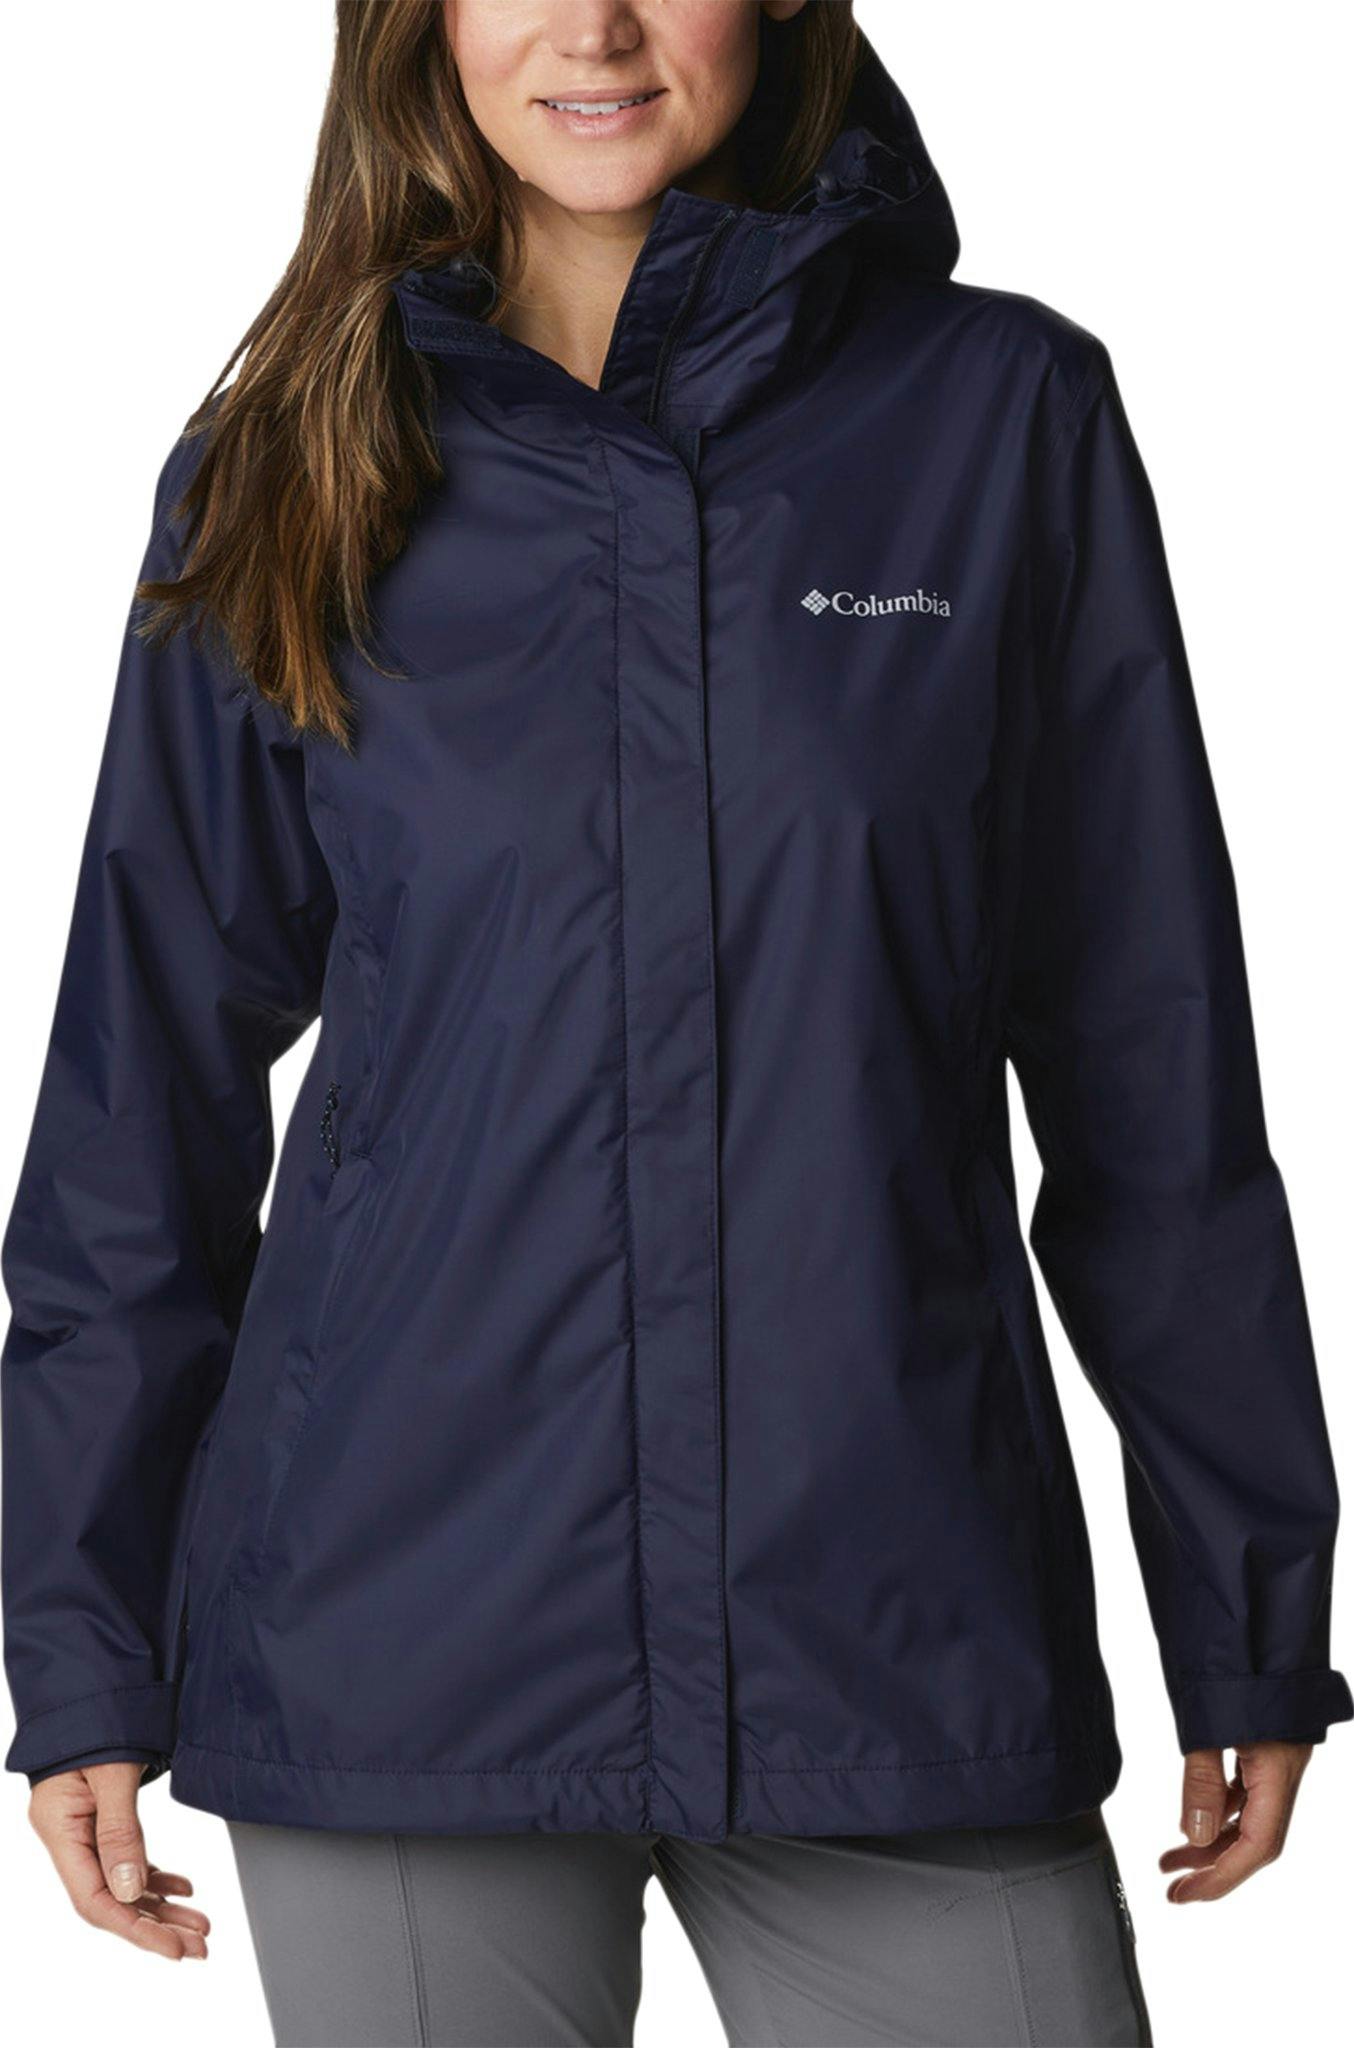 Product image for Arcadia II Jacket - Women's